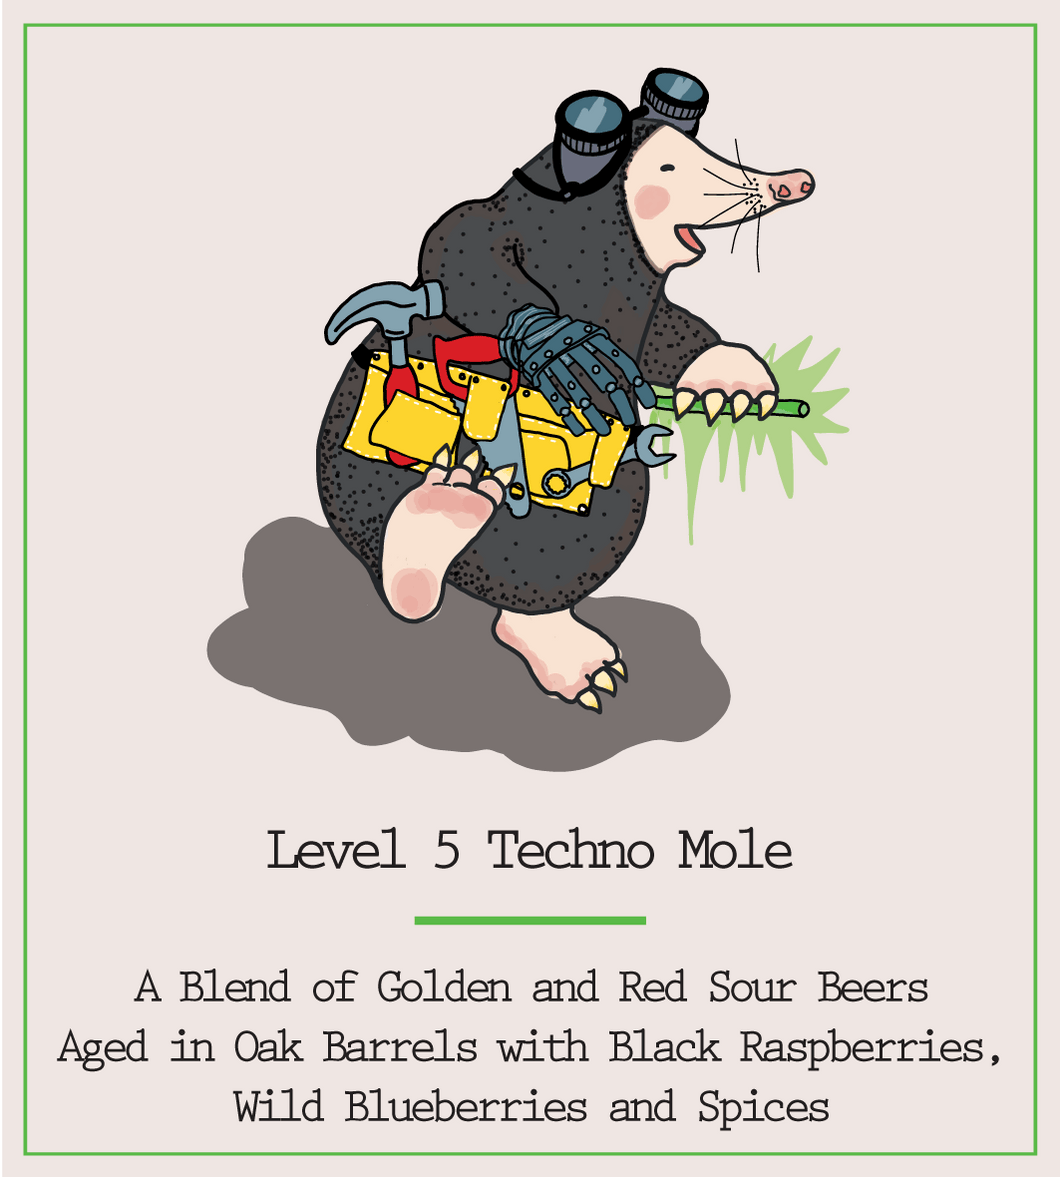 Level 5 Techno Mole